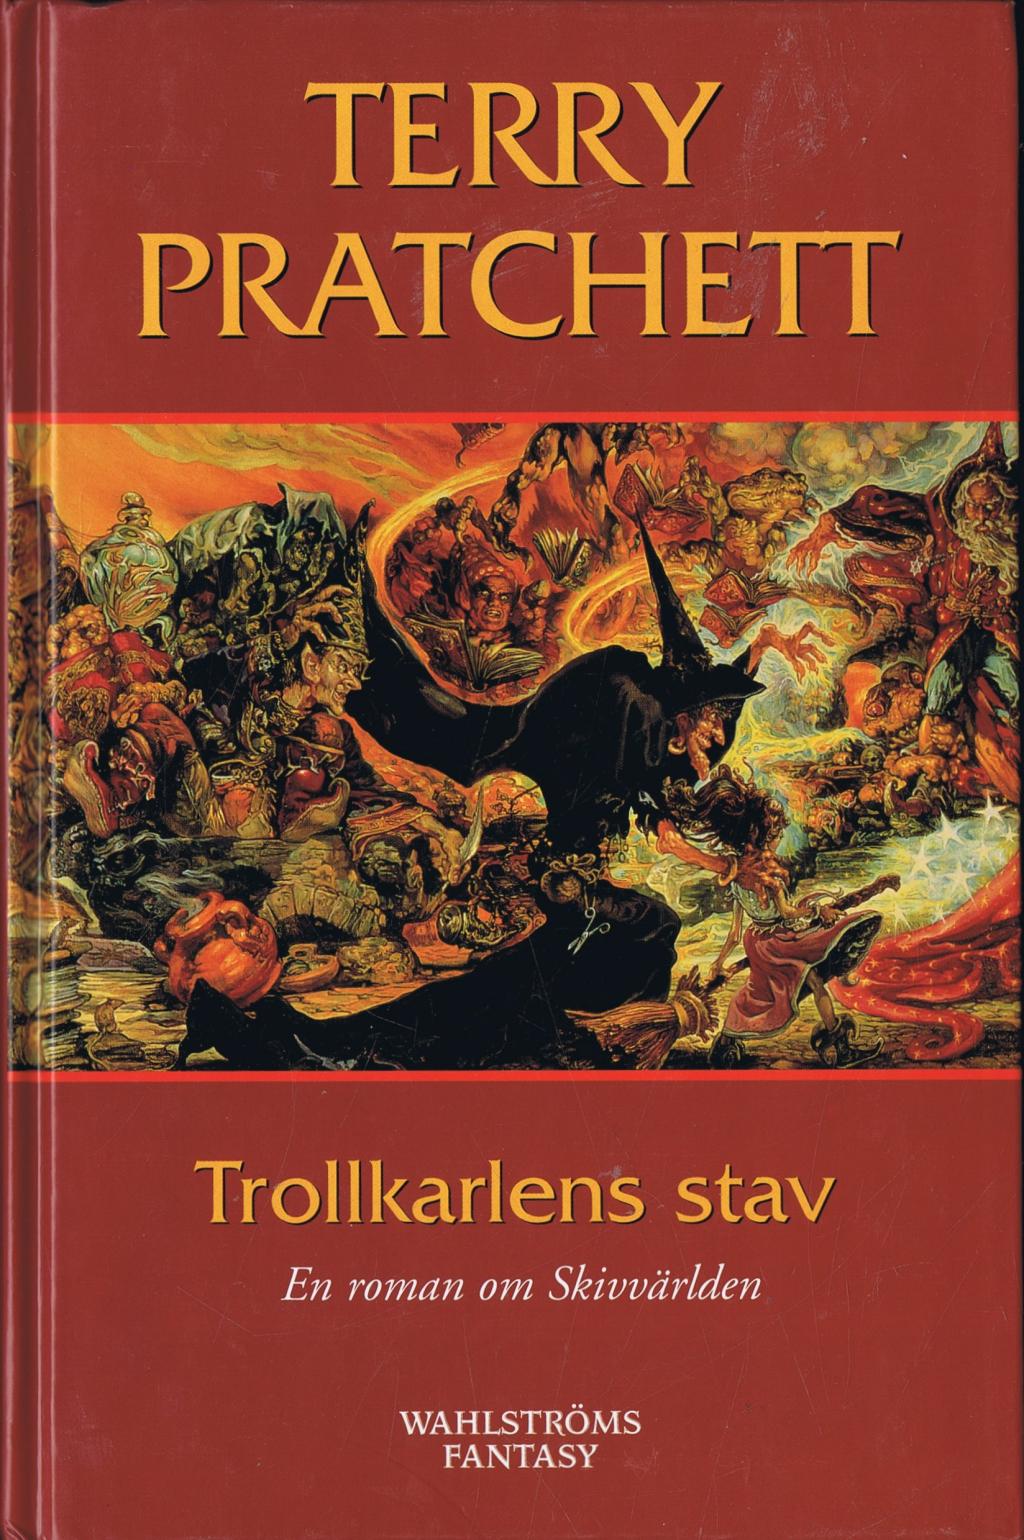 Trollkarlens stav av Terry Pratchett (Kartonnage) - Fantasyhyllan